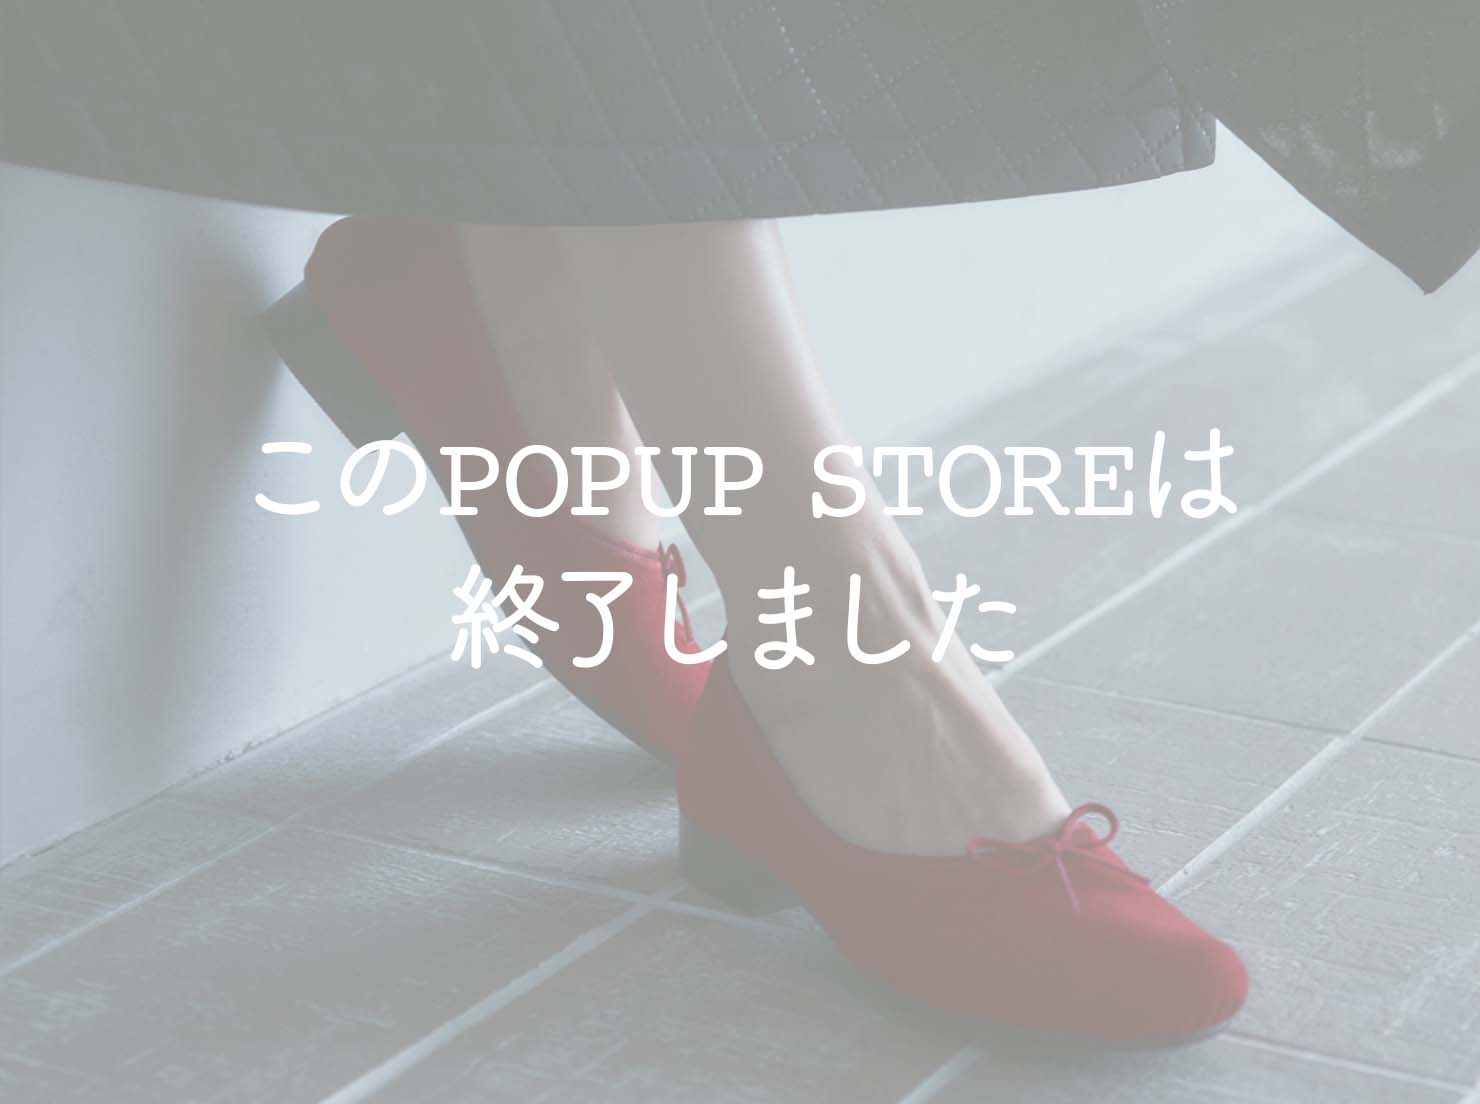 広島福屋 八丁堀本店 POPUP STORE Vol.2(このPOPUP STOREは終了しました)